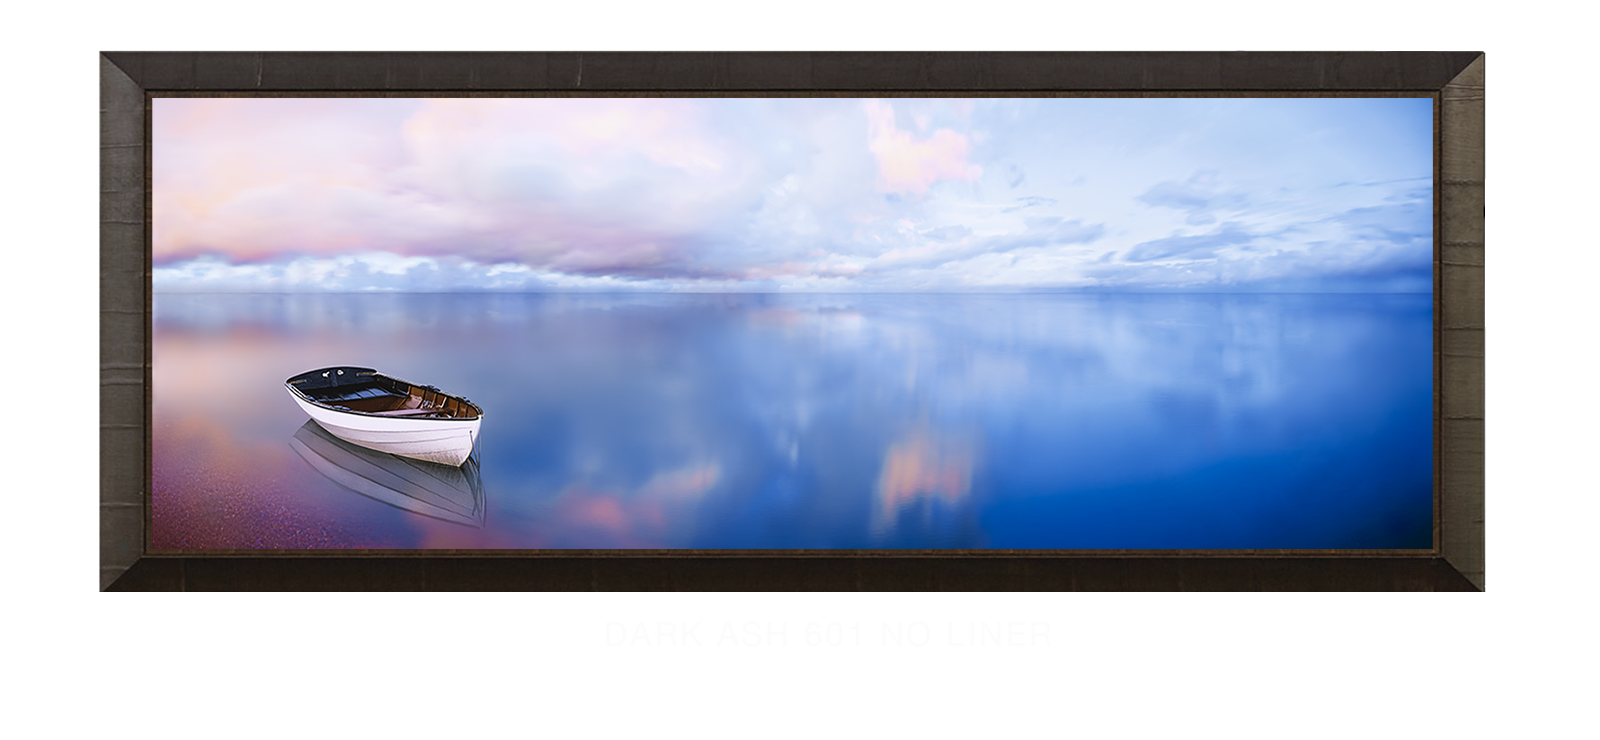 28BLUELAKEBOAT Dark Ash 601 w_No Liner T